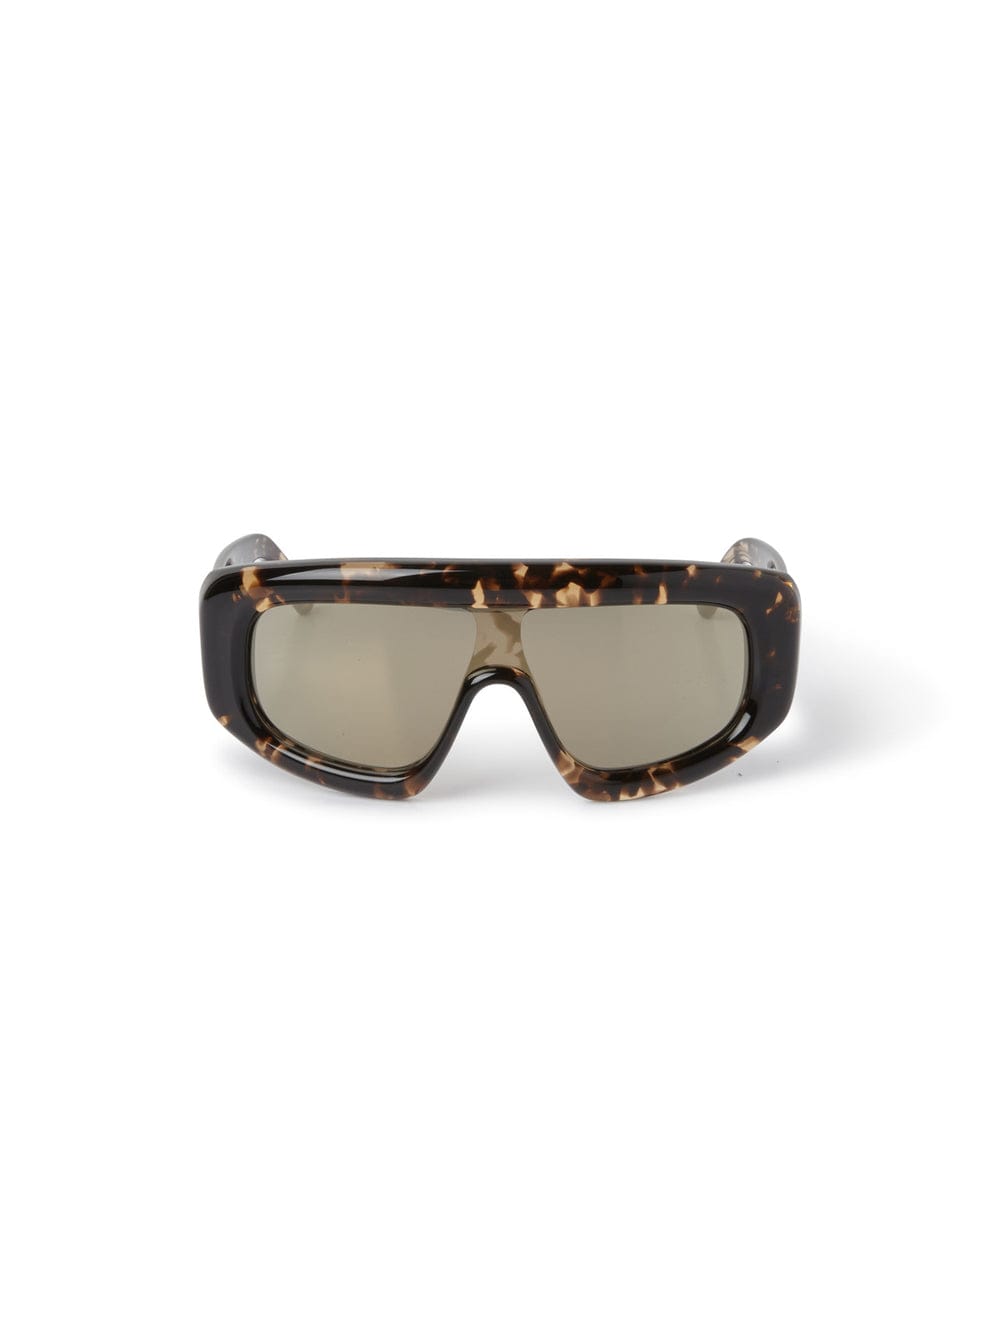 Palm Angels Carmel - Tortoise Sunglasses